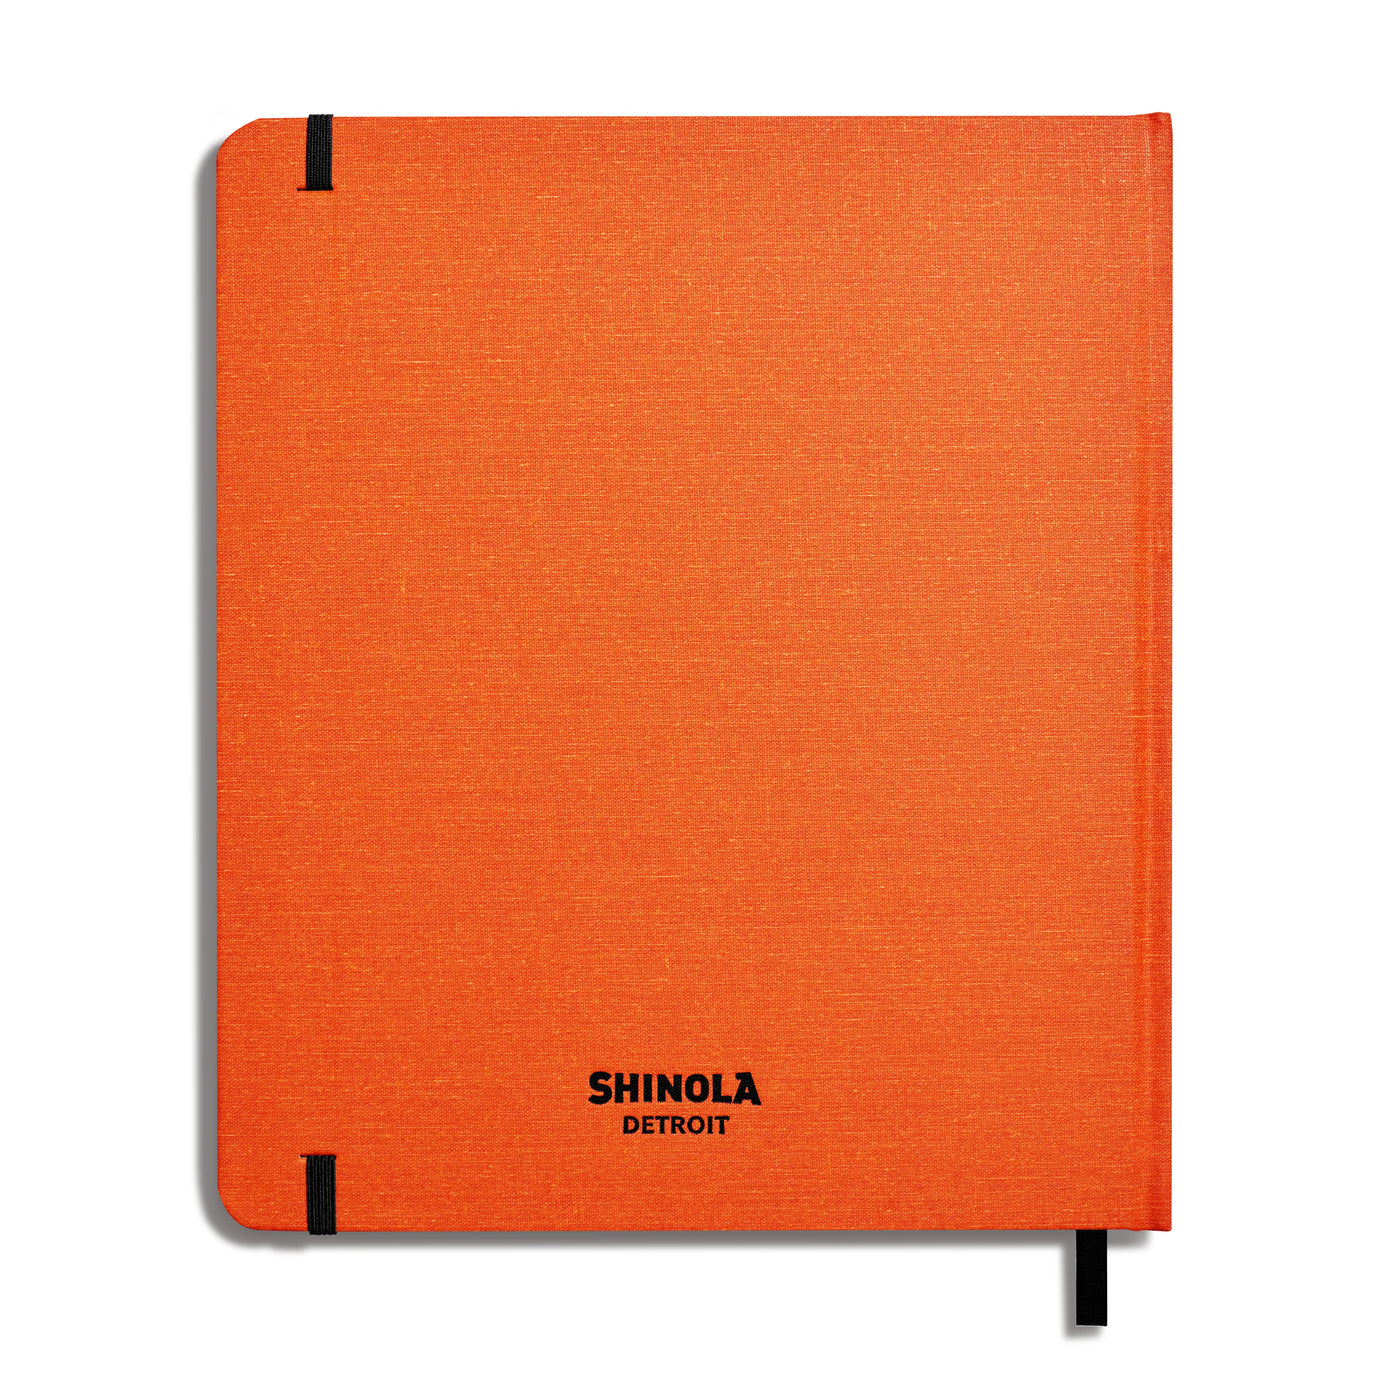 Shinola | Sketch Book